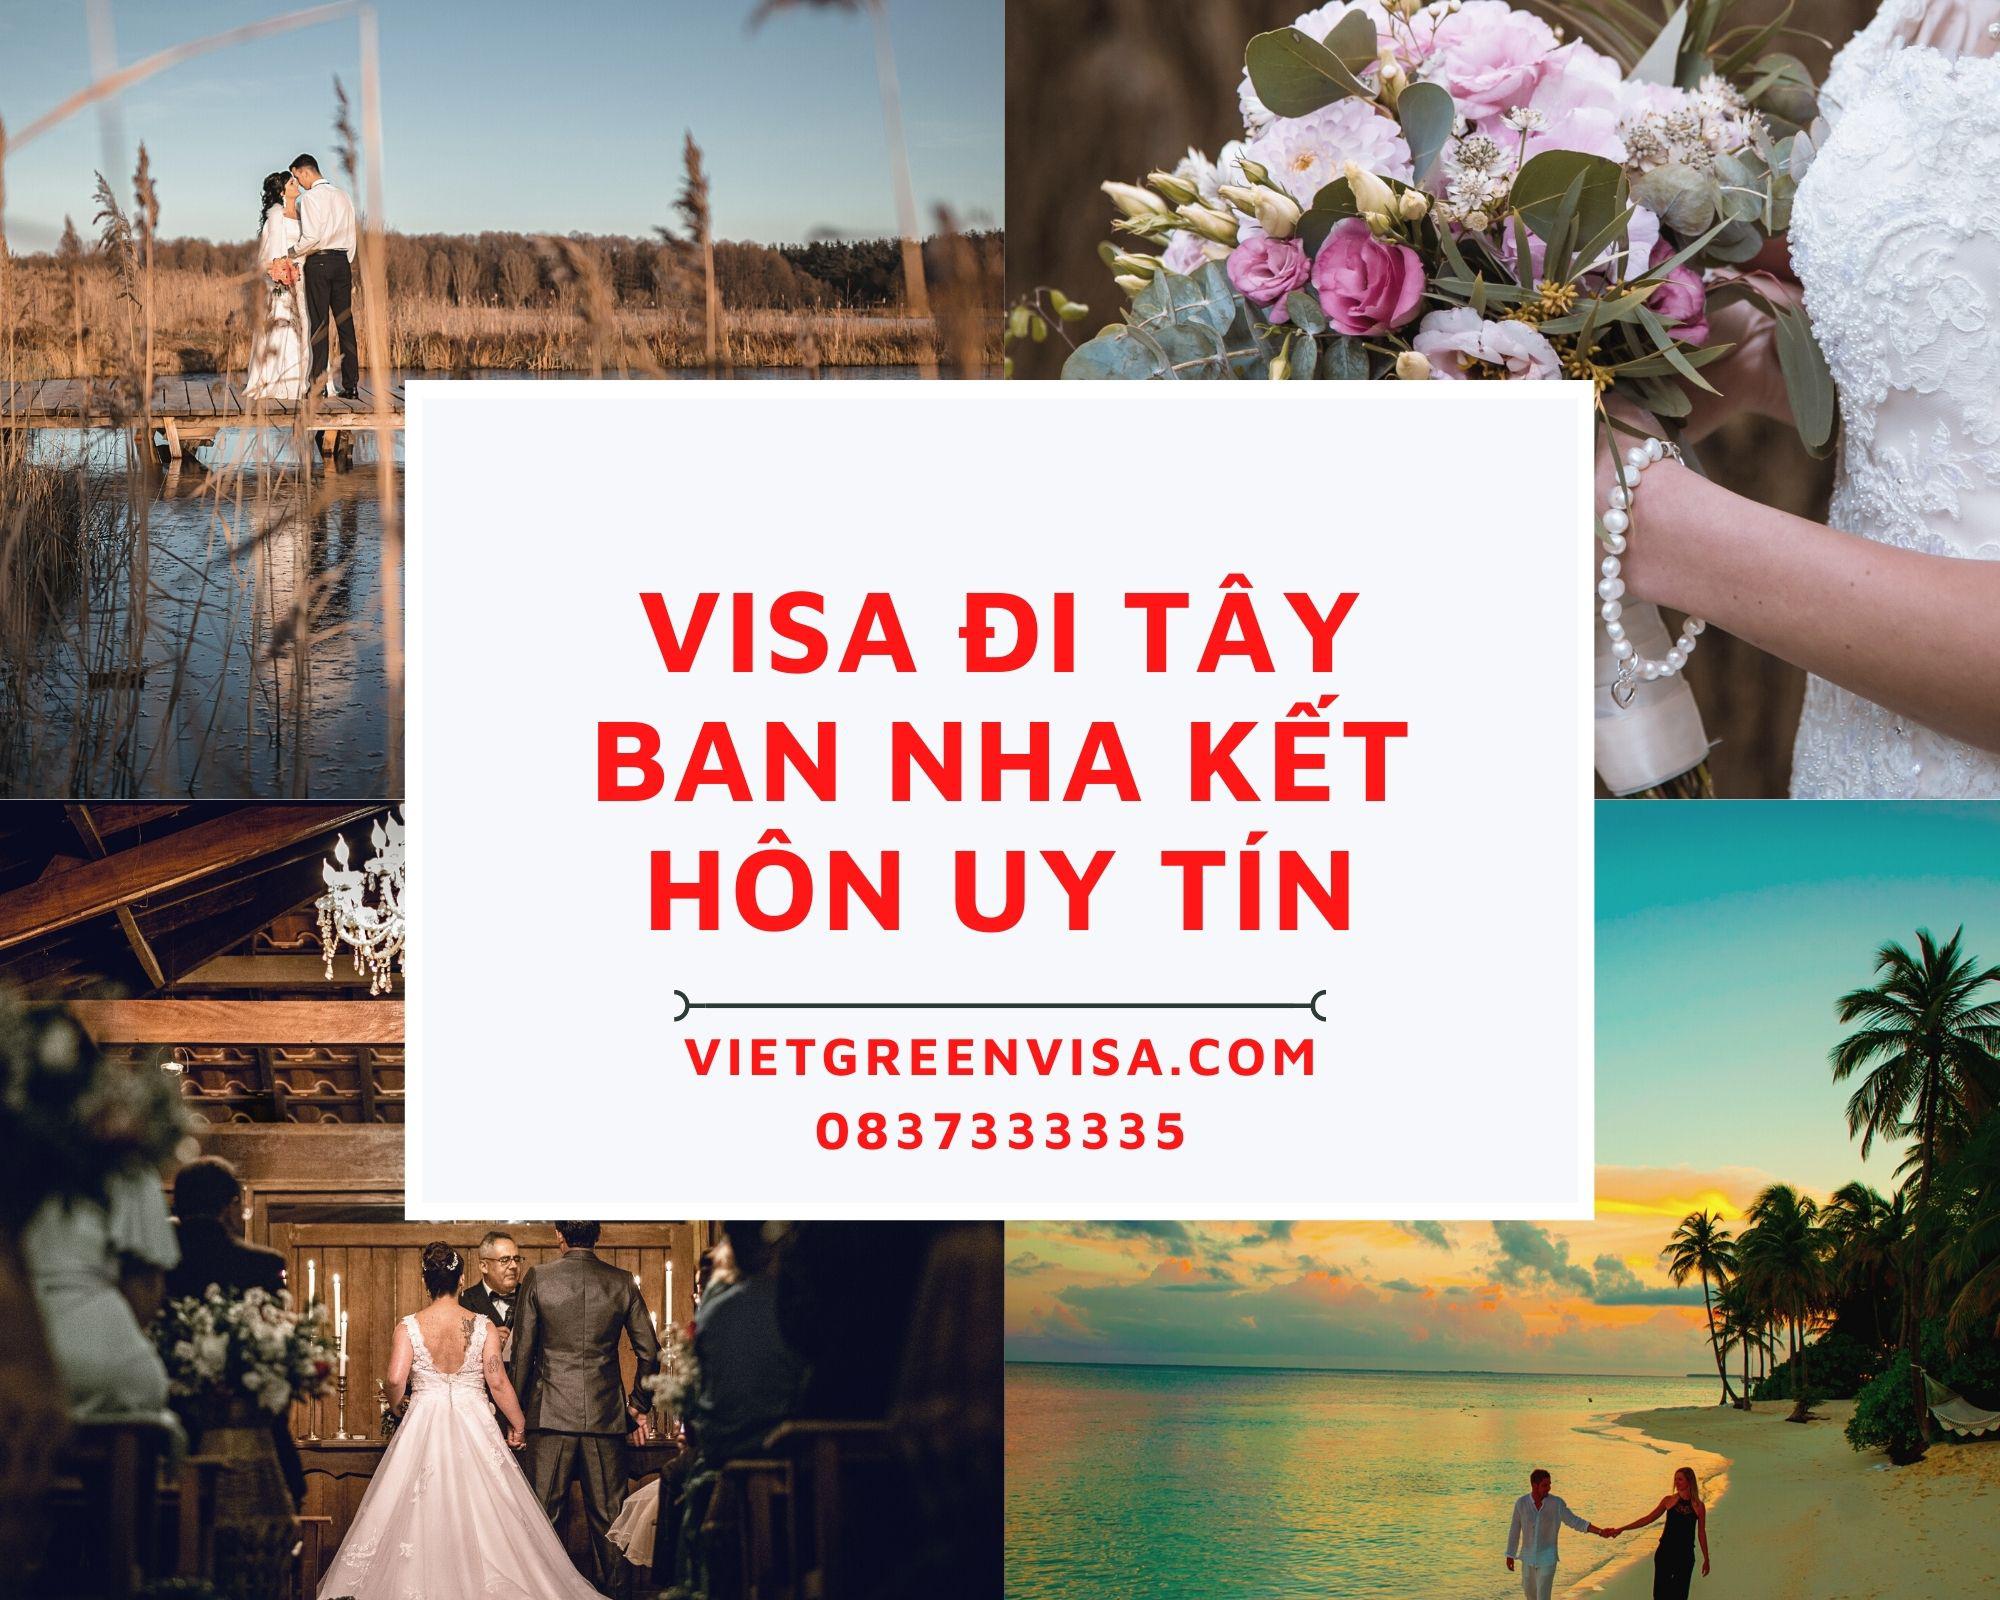 Làm visa đi Tây Ban Nha kết hôn uy tín | Vietgreenvisa